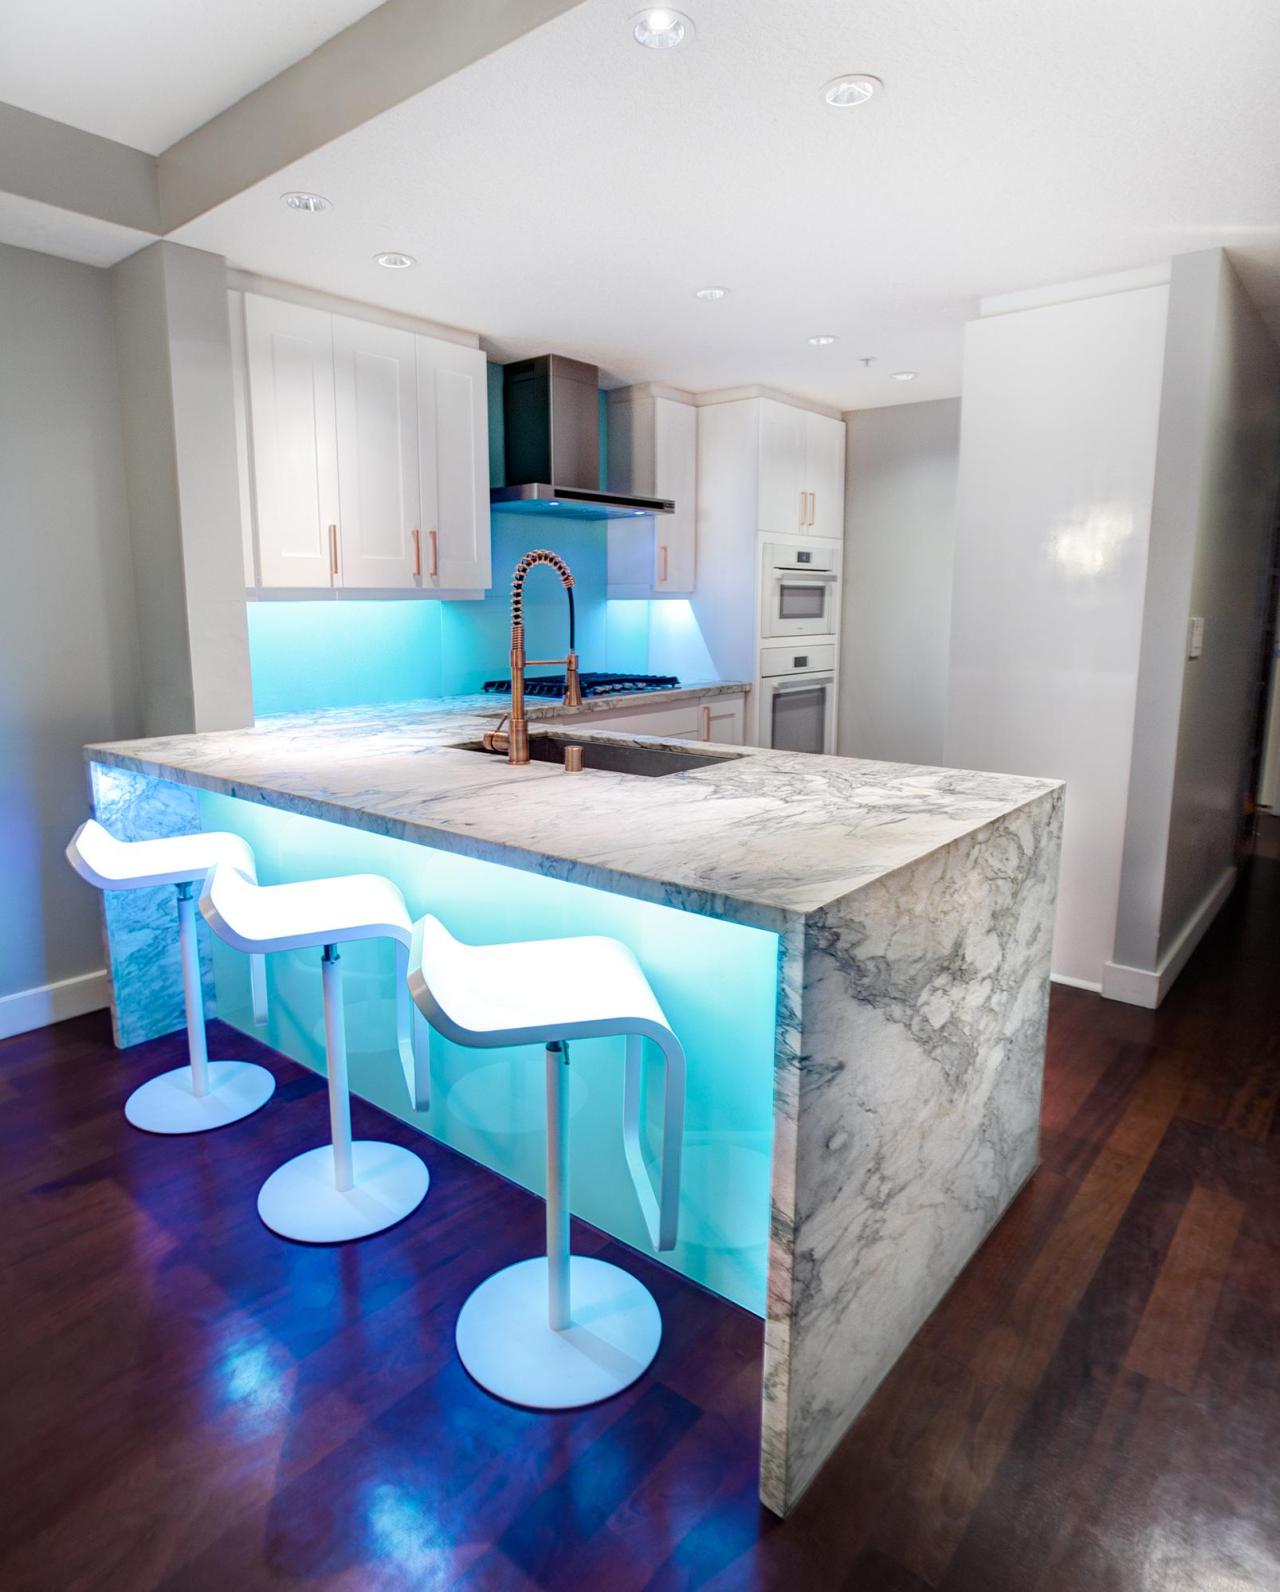 Home Interior Design — Remodelled kitchen Backsplash/bar lights are ...